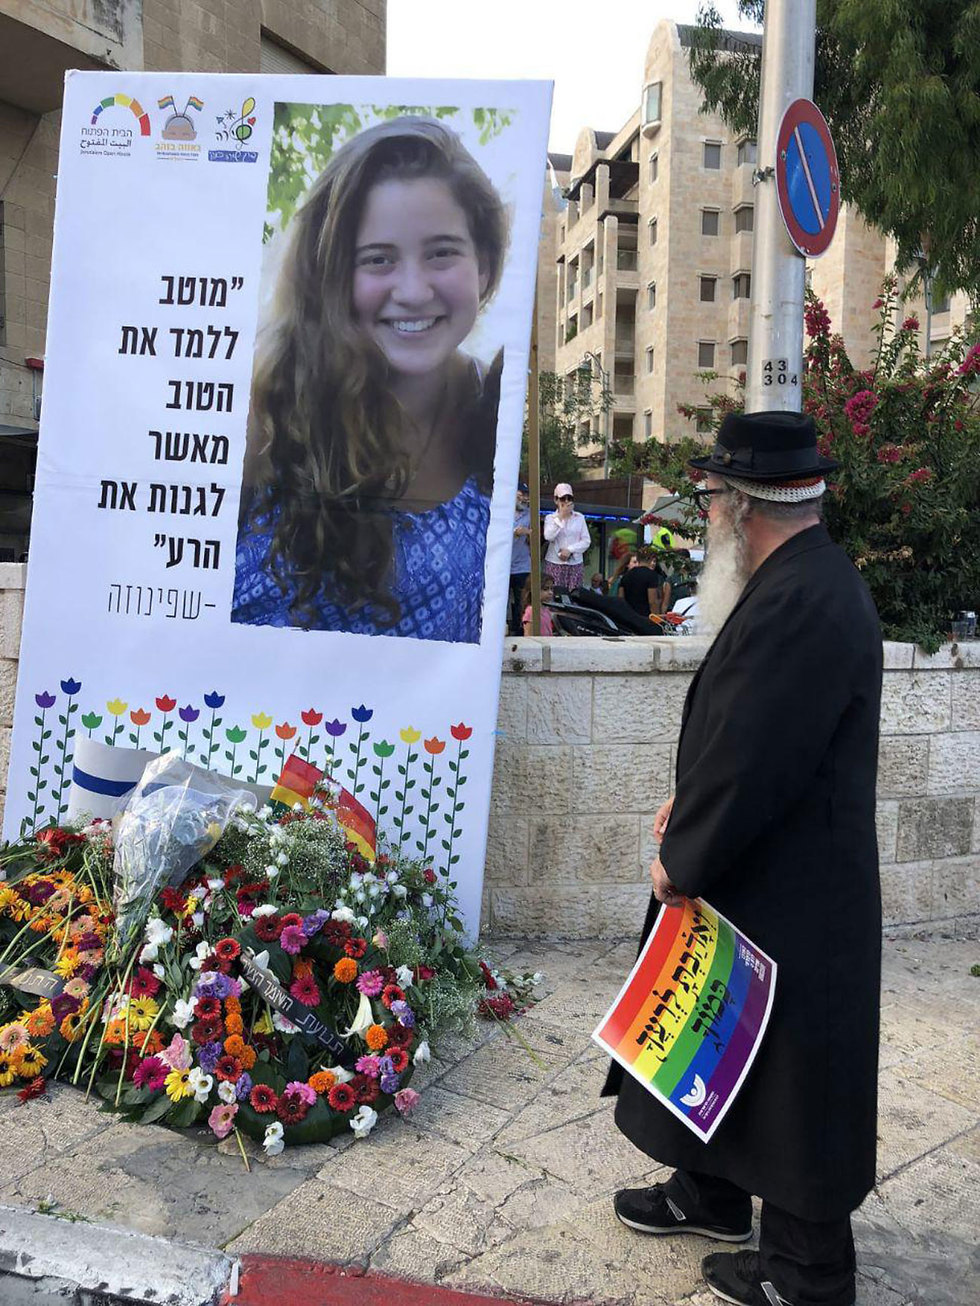 אורי בנקי, אביה של שירה שנרצחה במצעד הגאווה בירושלים ב-2015, פונה לציבור להשתתף במצעד שיתקיים ביום חמישי ()